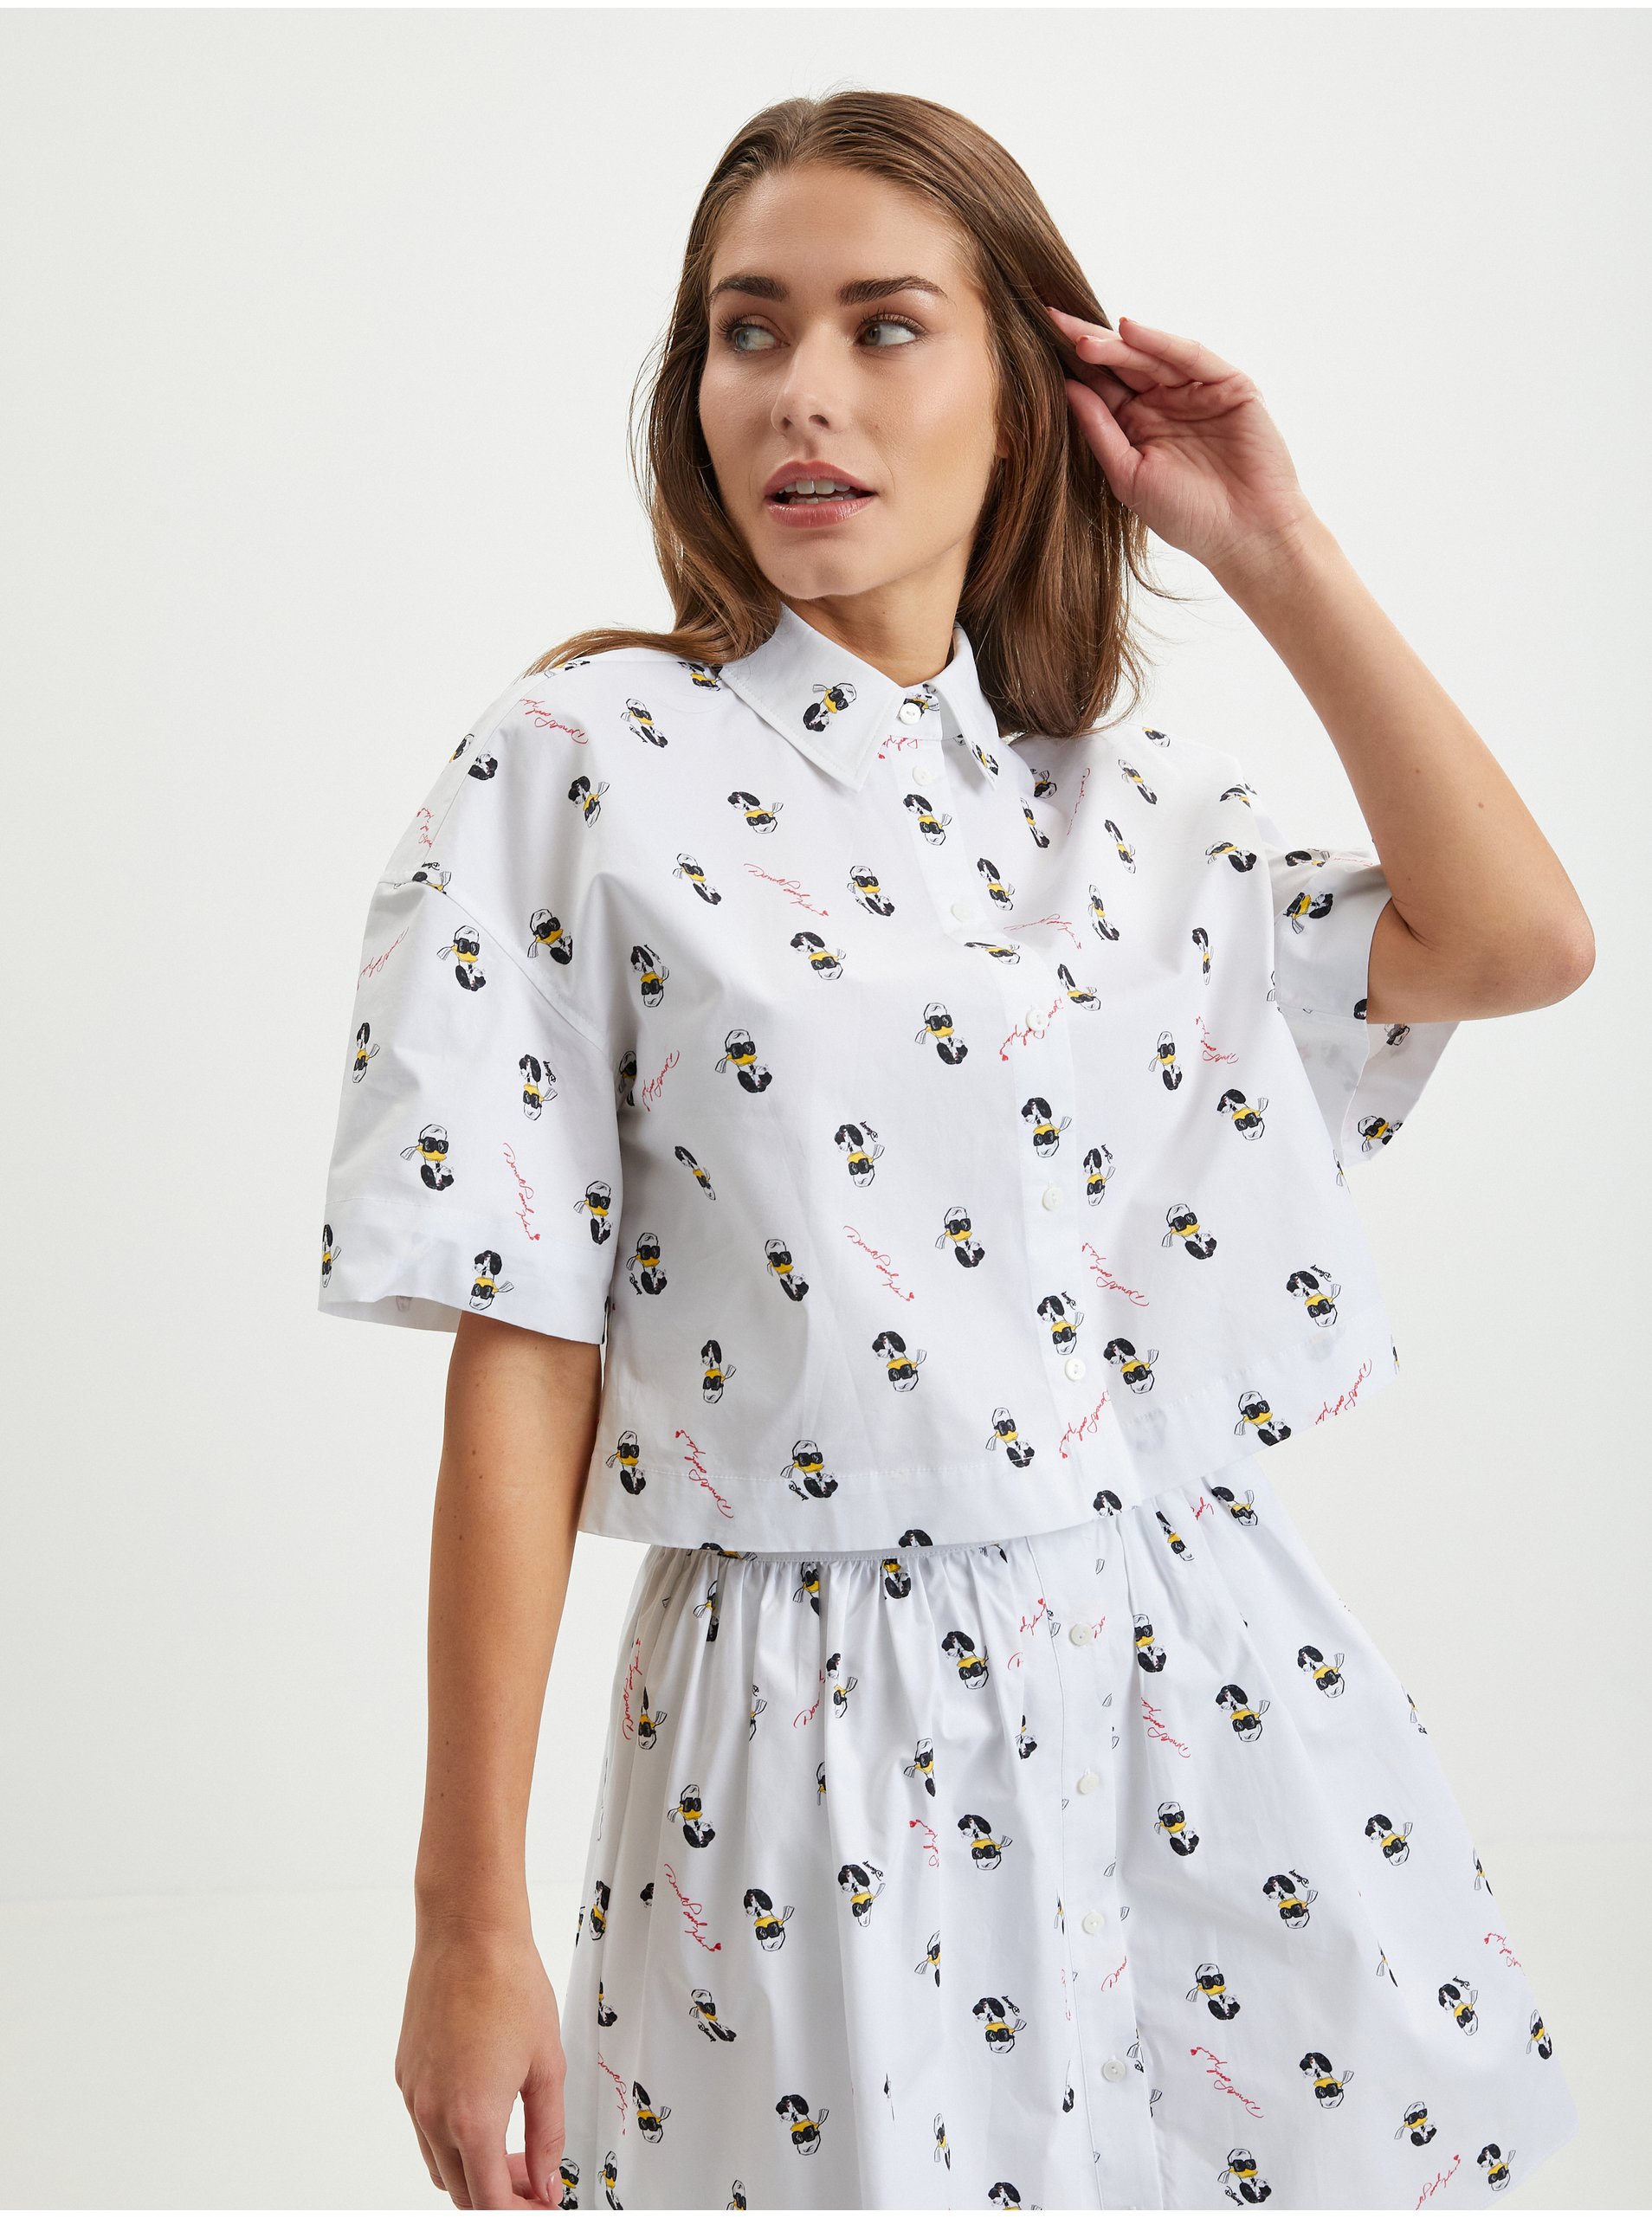 Lacno Biela dámska vzorovaná košeľa KARL LAGERFELD x Disney